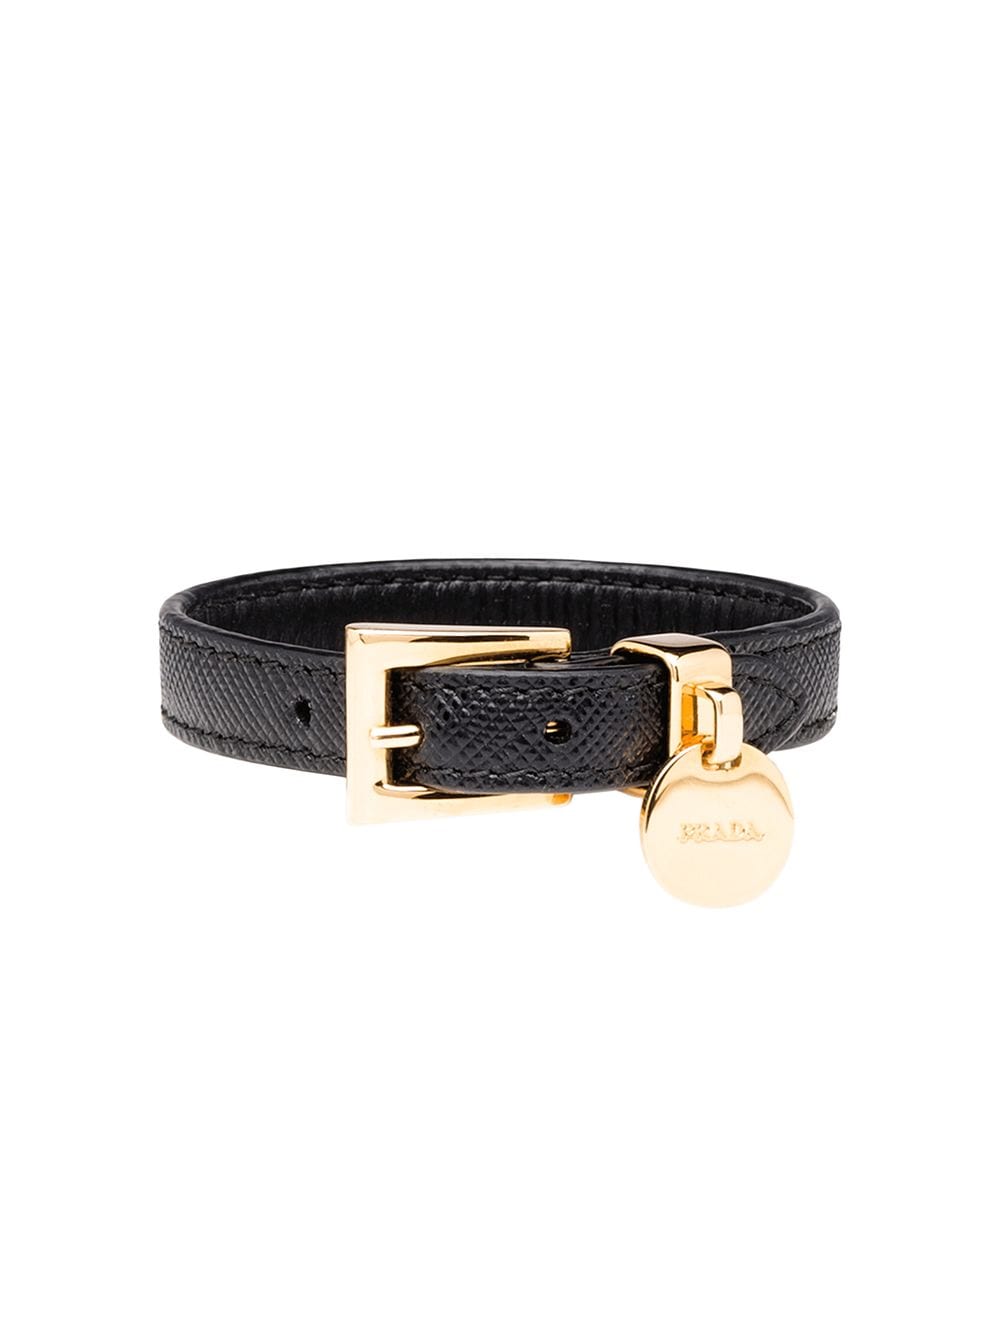 Saffiano leather bracelet